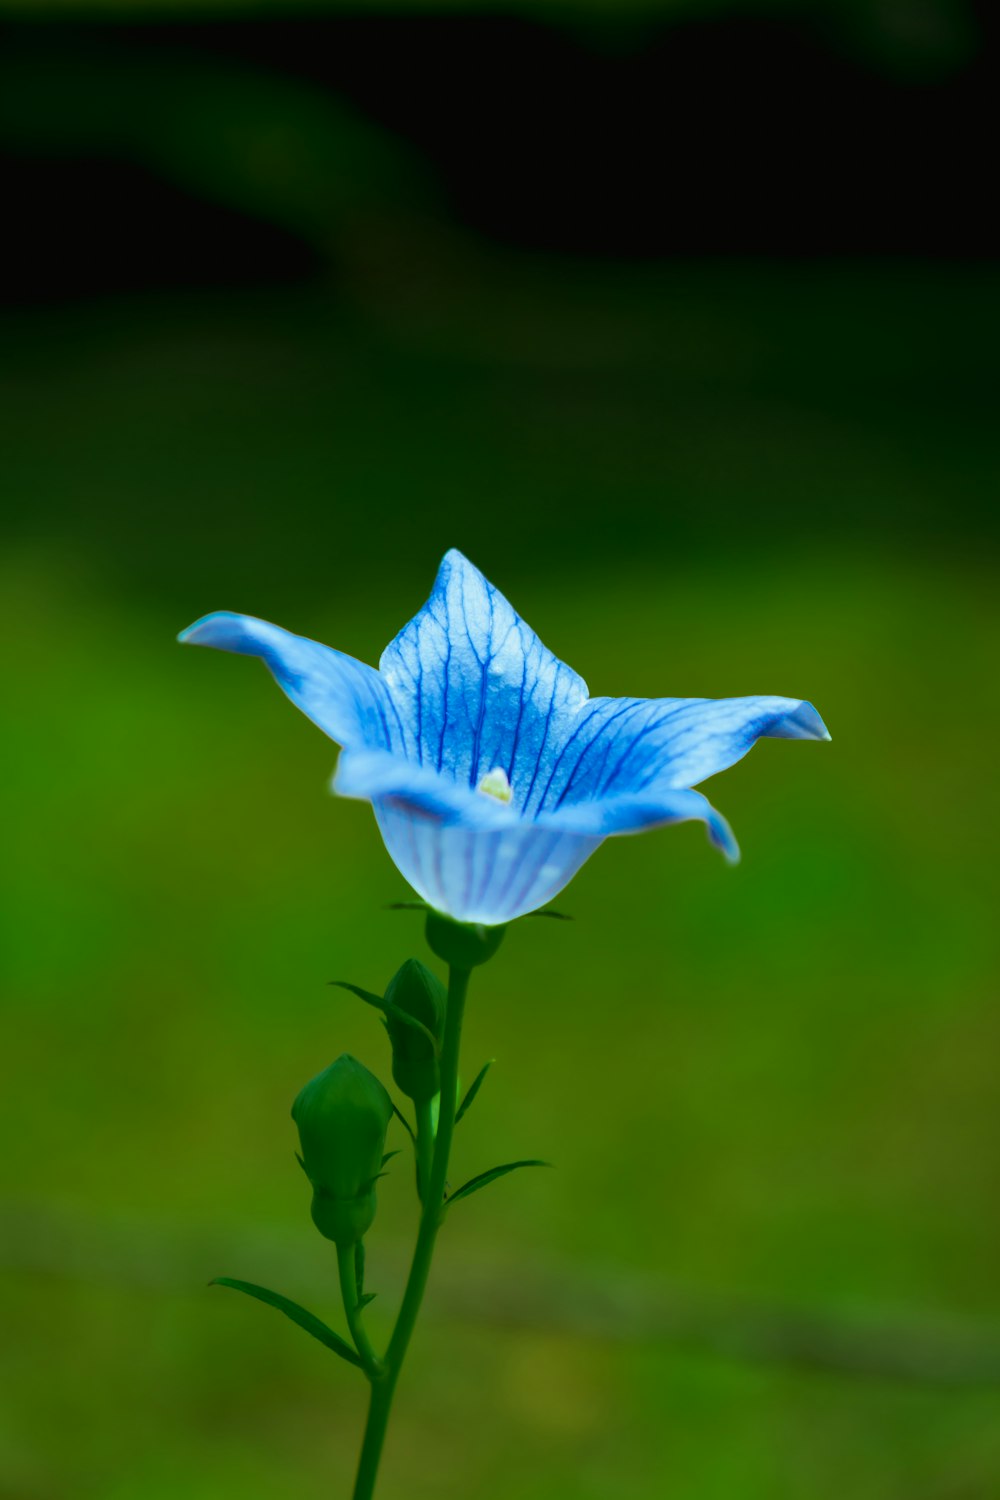 Flower Stem Pictures  Download Free Images on Unsplash